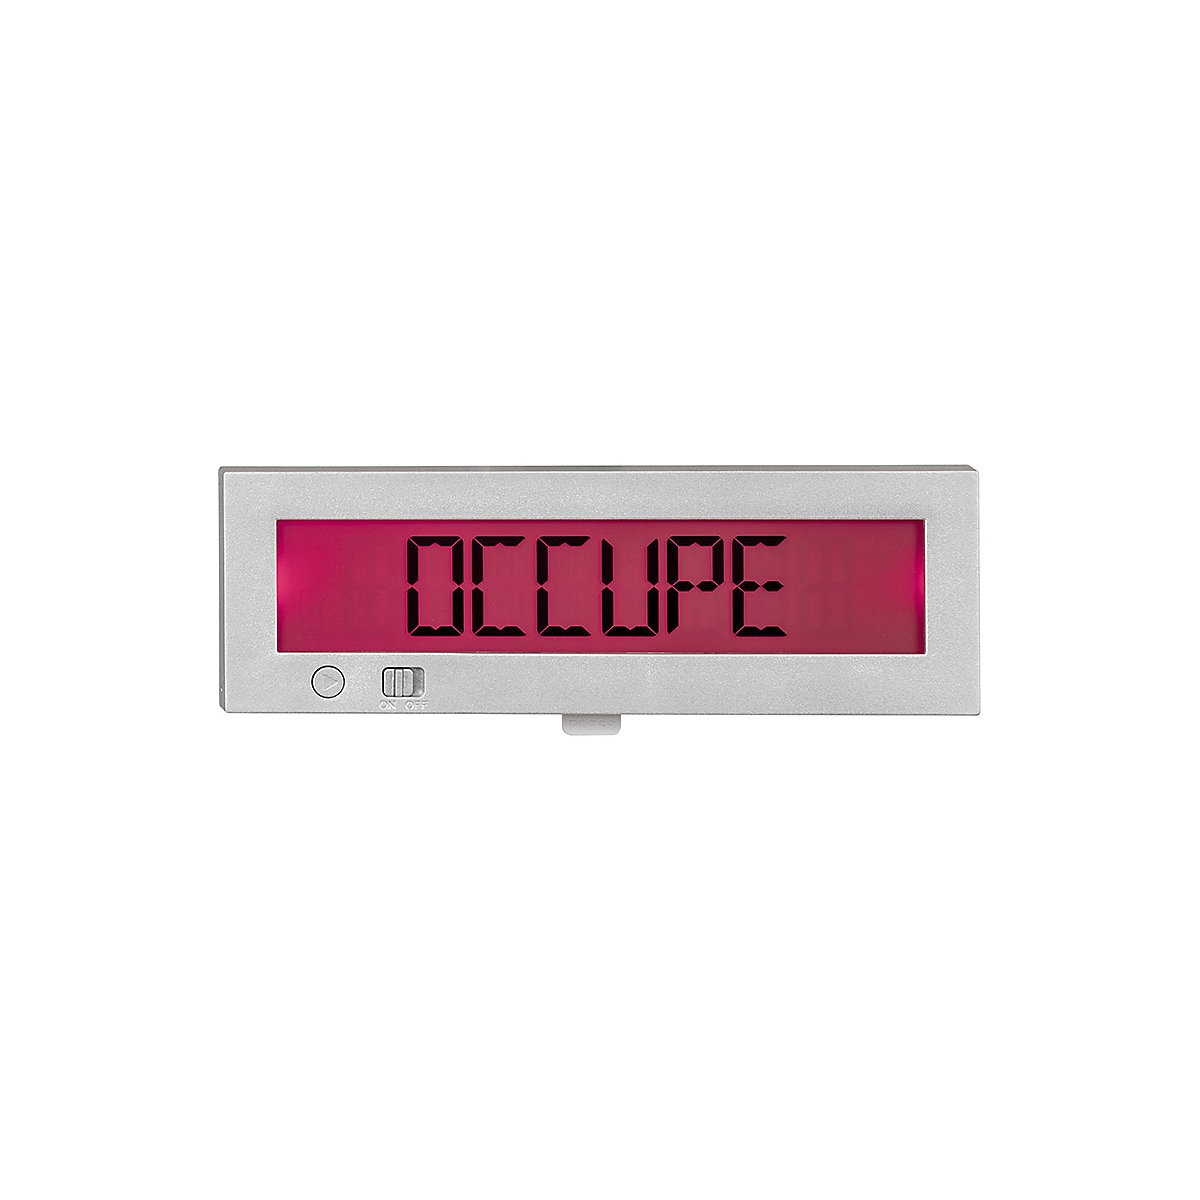 Digitalna tablica za vrata Free/Occupied (prosto/zasedeno) Go2 (Slika izdelka 42)-41